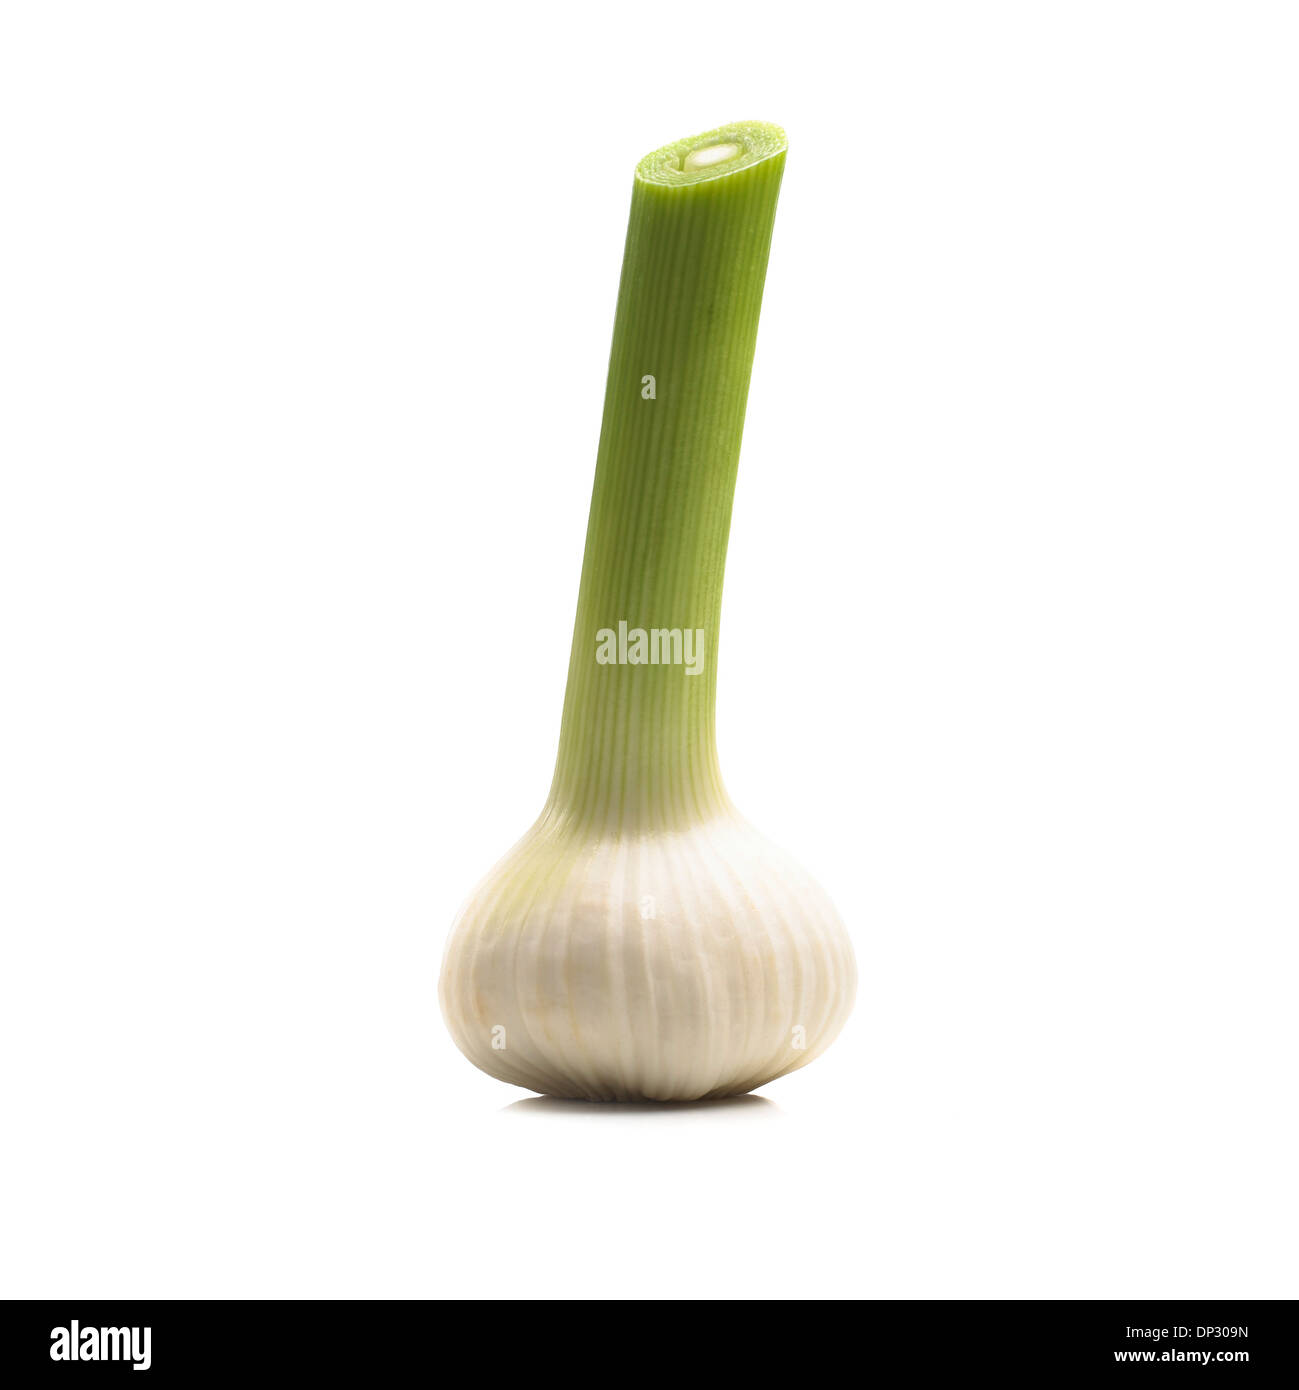 Garlic bulb Stock Photo